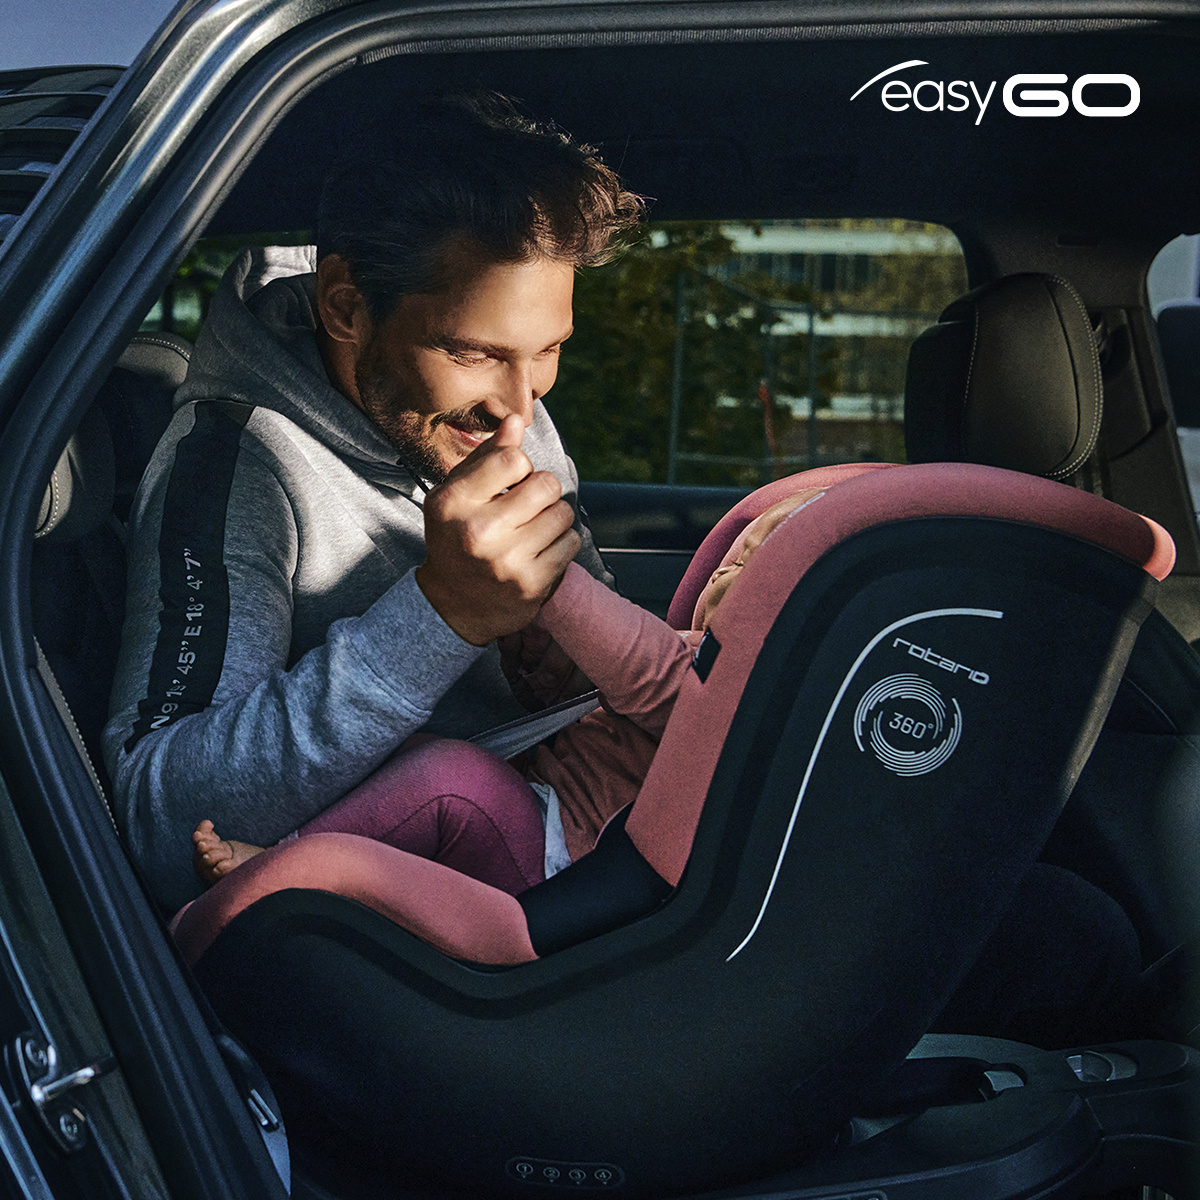 Easy Go Fotelik Samochodowy: Kompletny przewodnik po bezpieczeństwie i funkcjonalności